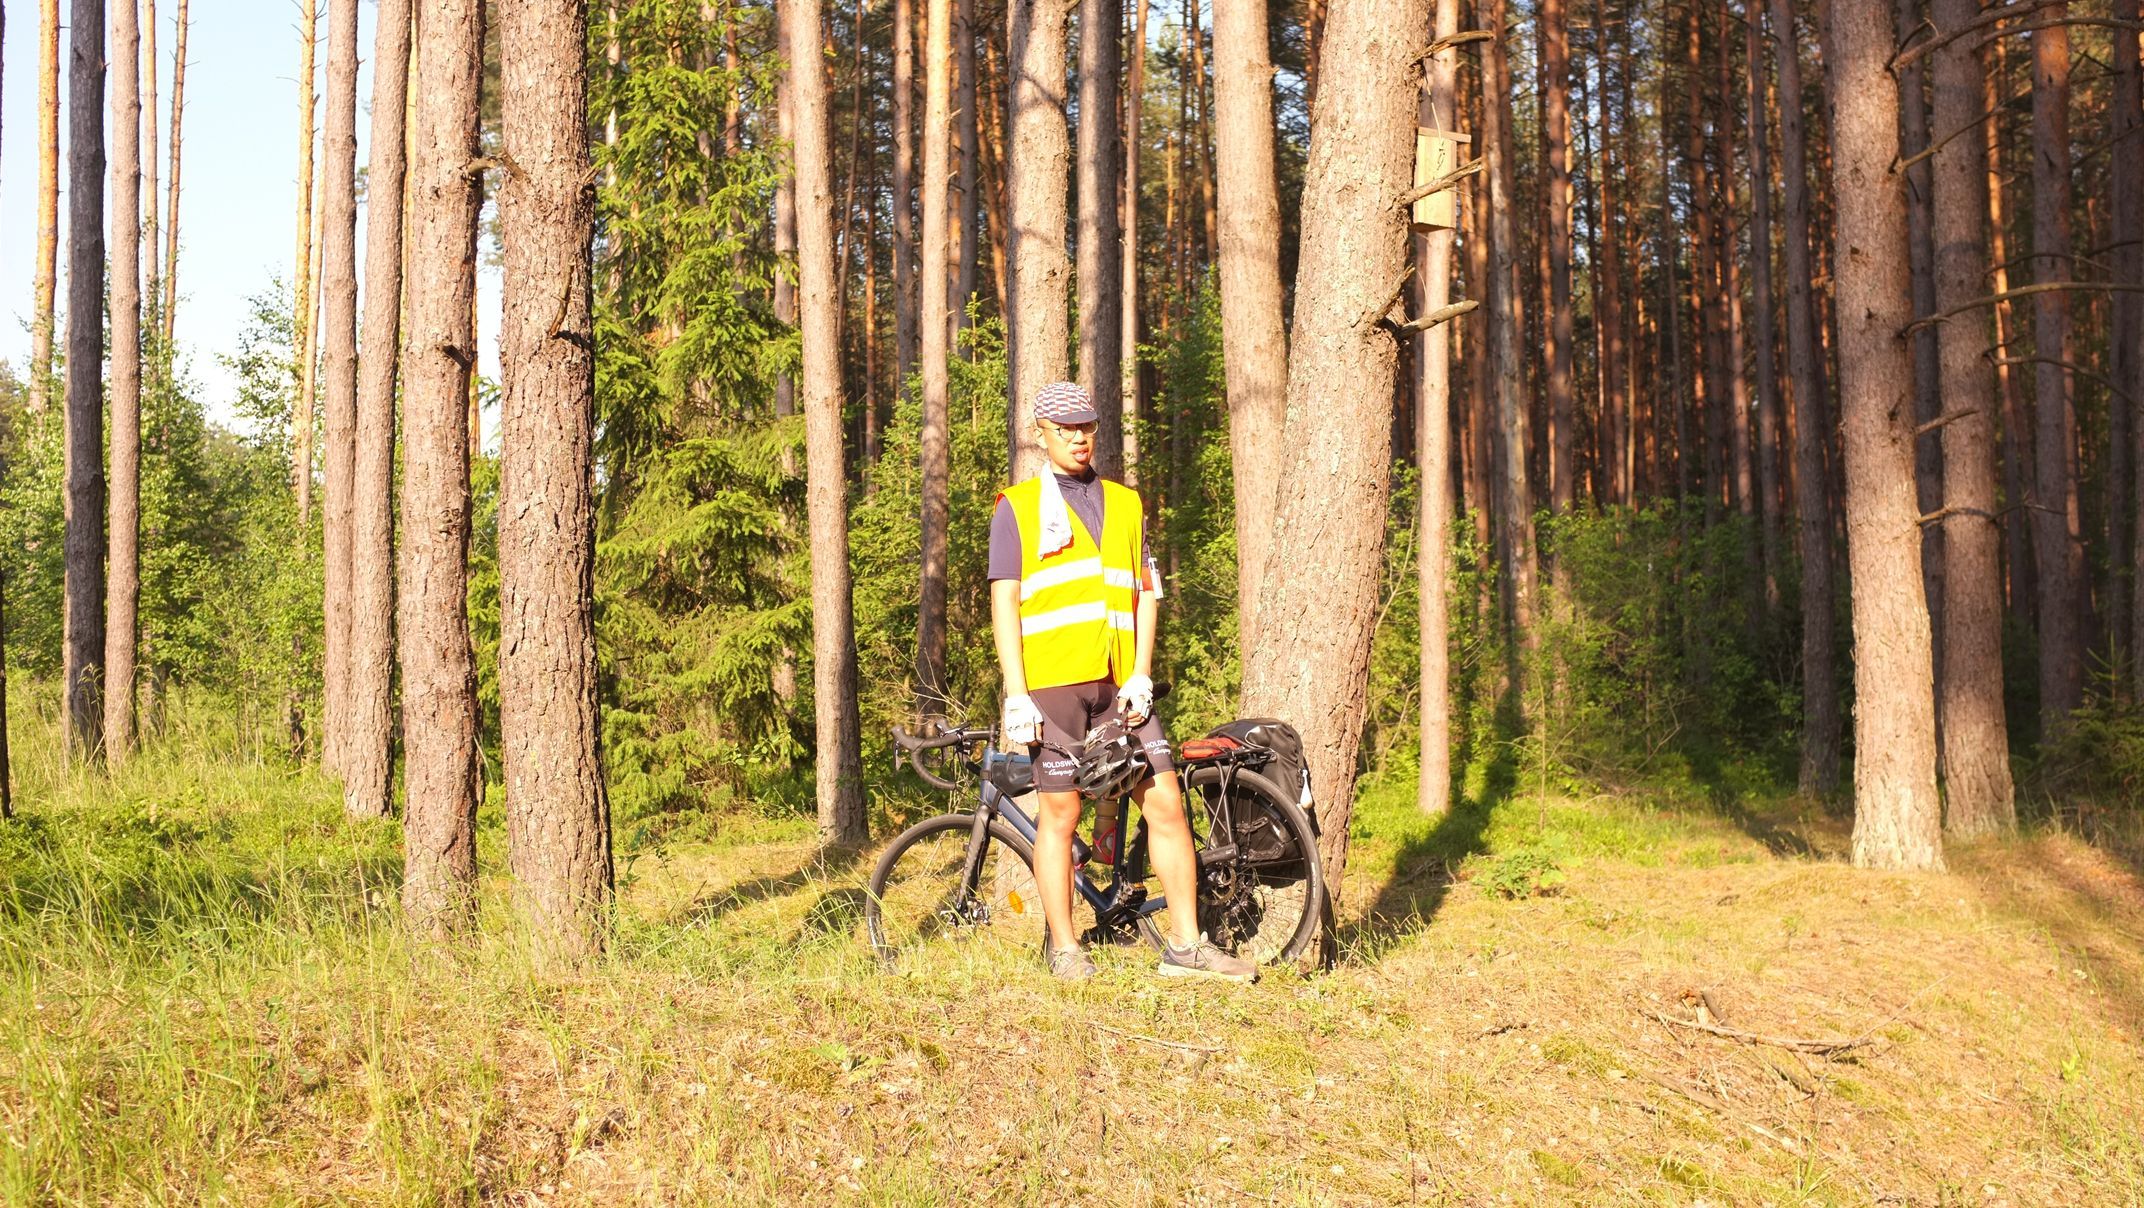 Ада Дахай Лао отвечает в туре за техническое сопровождение. Ада  — выпускник Гумбольдского университета по специальности  «Менеджмент природных ресурсов». Уже несколько лет развивает велосипедный кооператив и делает велопутешествия в окрестностях Берлина.